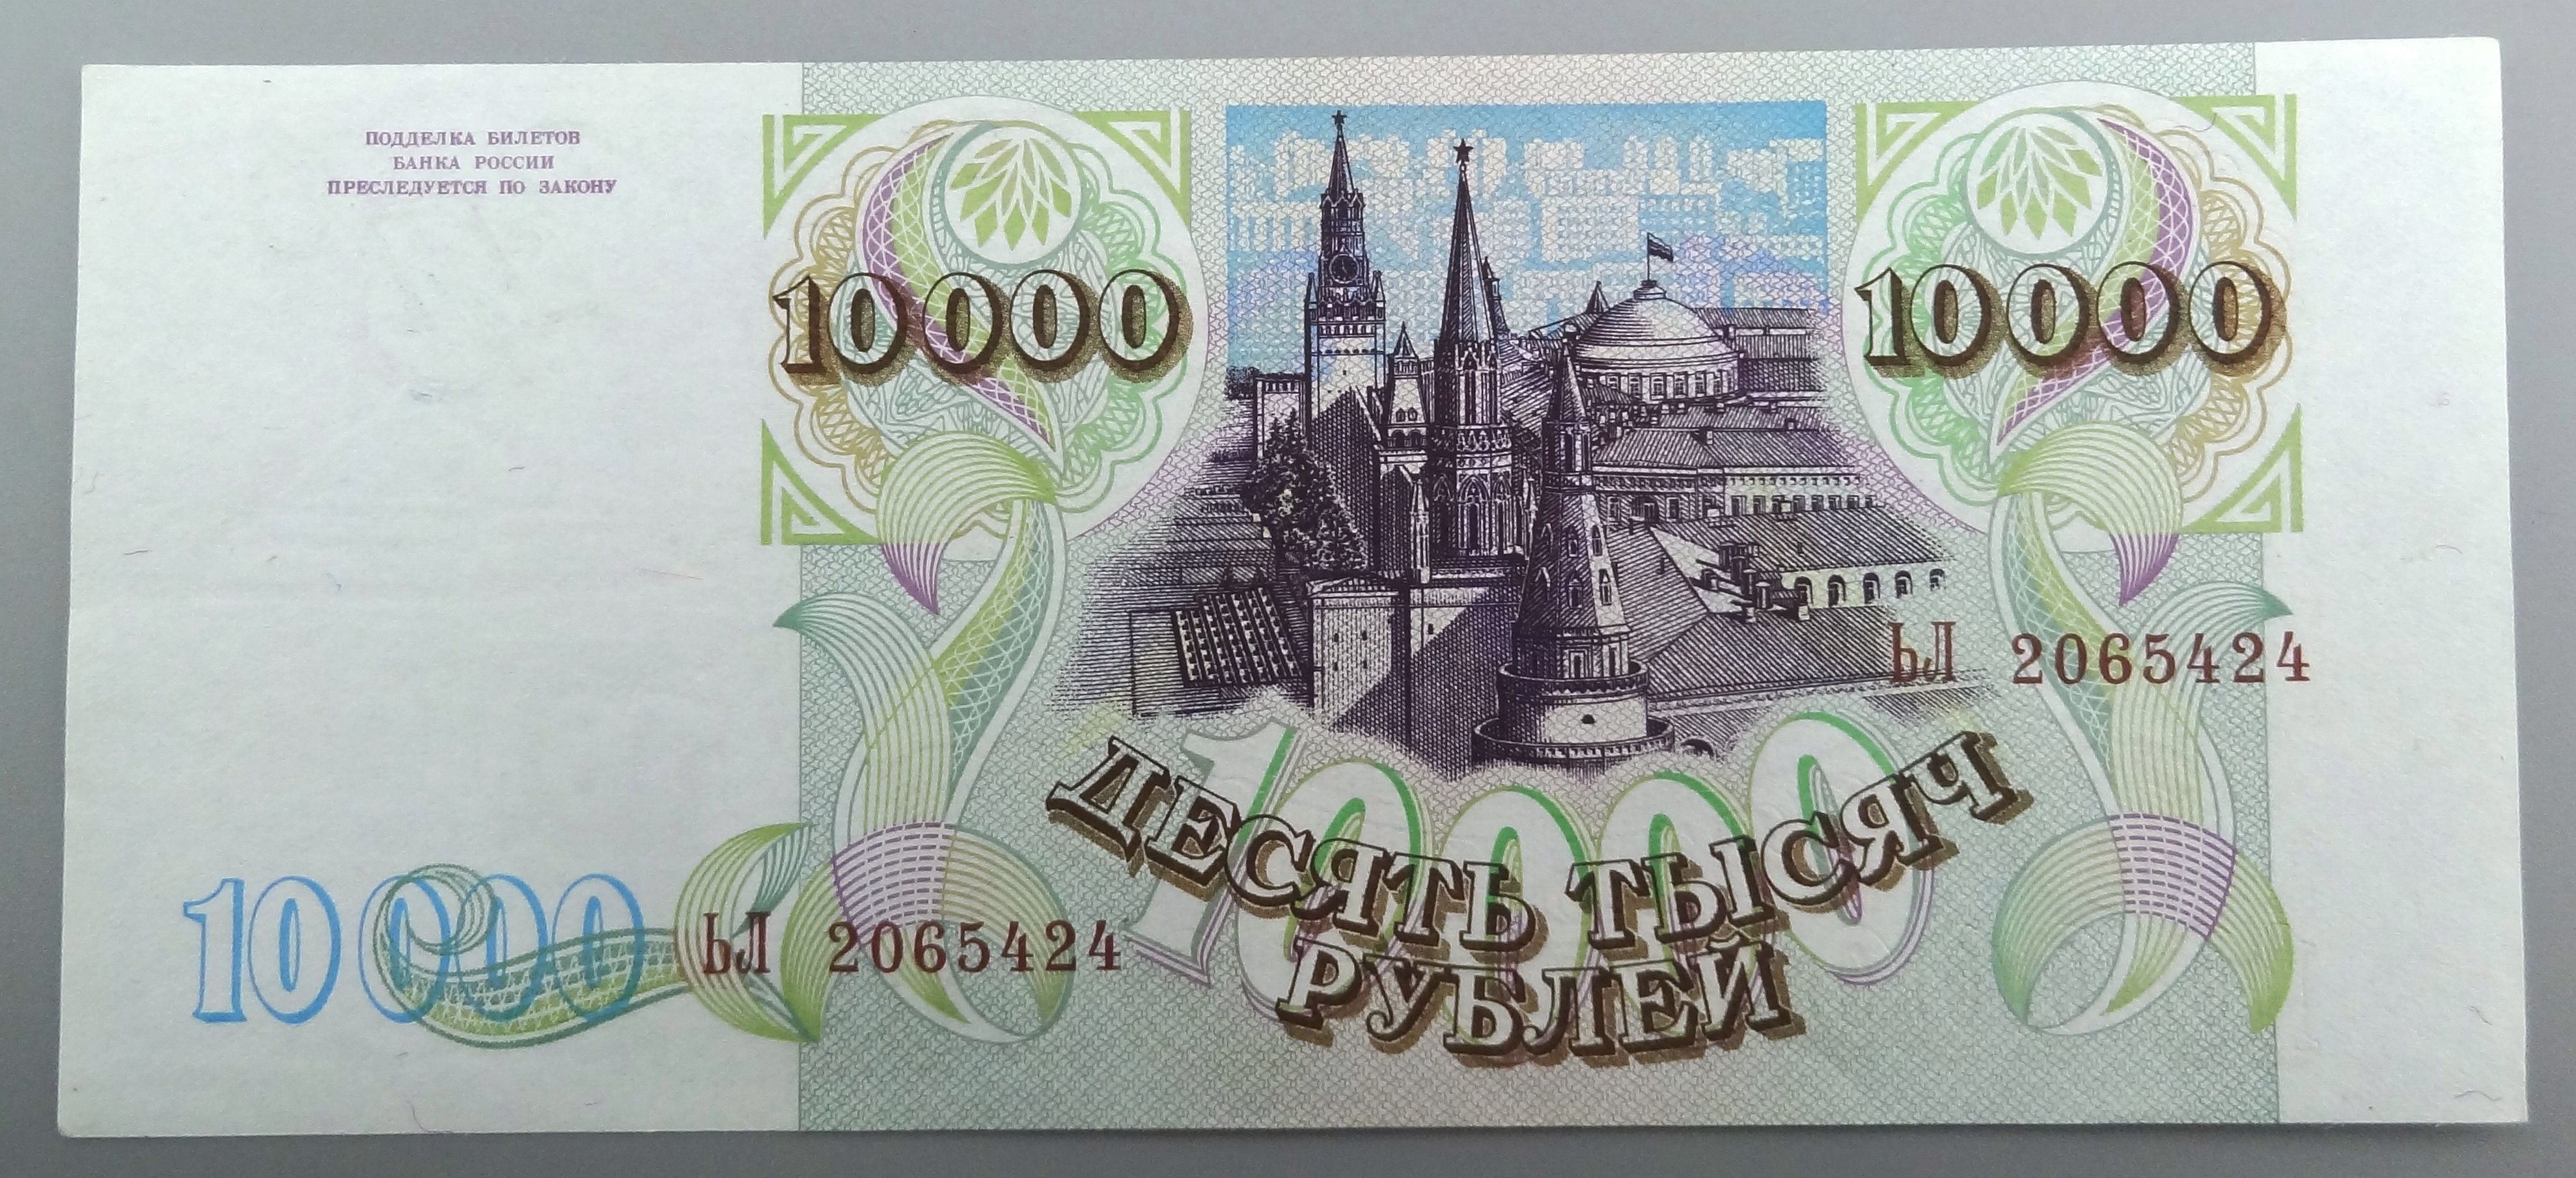 18 00 в рублях. Купюра 10000 рублей 1993. 10000 Рублей 1993 года. Купюра 10000 рублей 1992 года. Банкнота купюра 10000 рублей 1992.